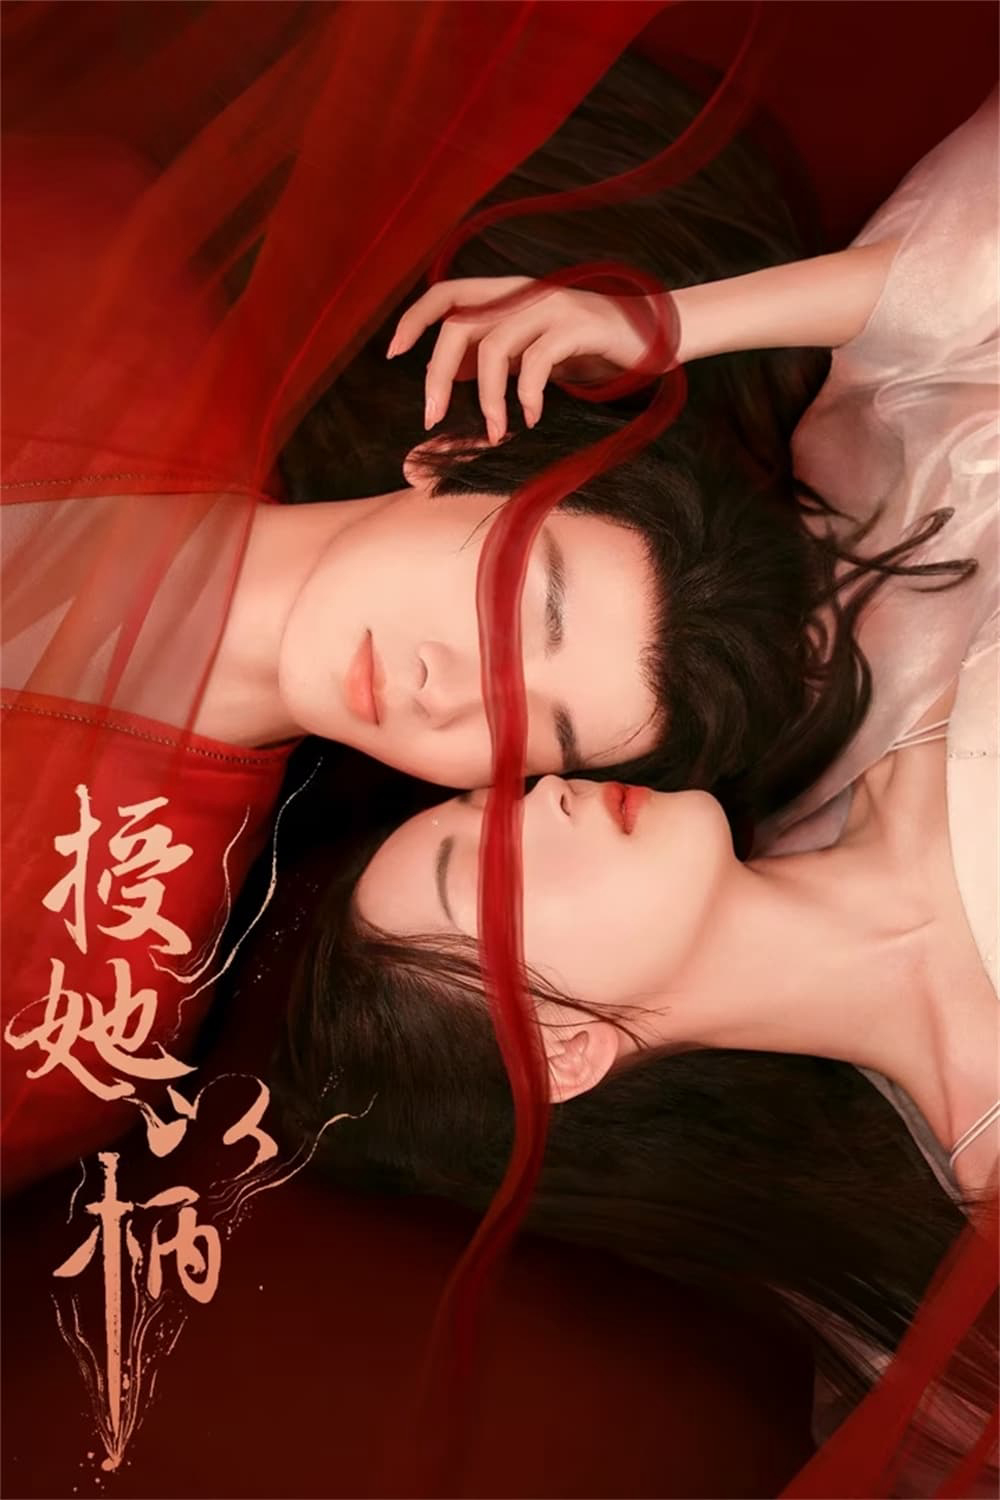 Poster Phim Thọ Tả Dĩ Bính (Để Nàng Nắm Thóp) (A Tale of Love and Loyalty)